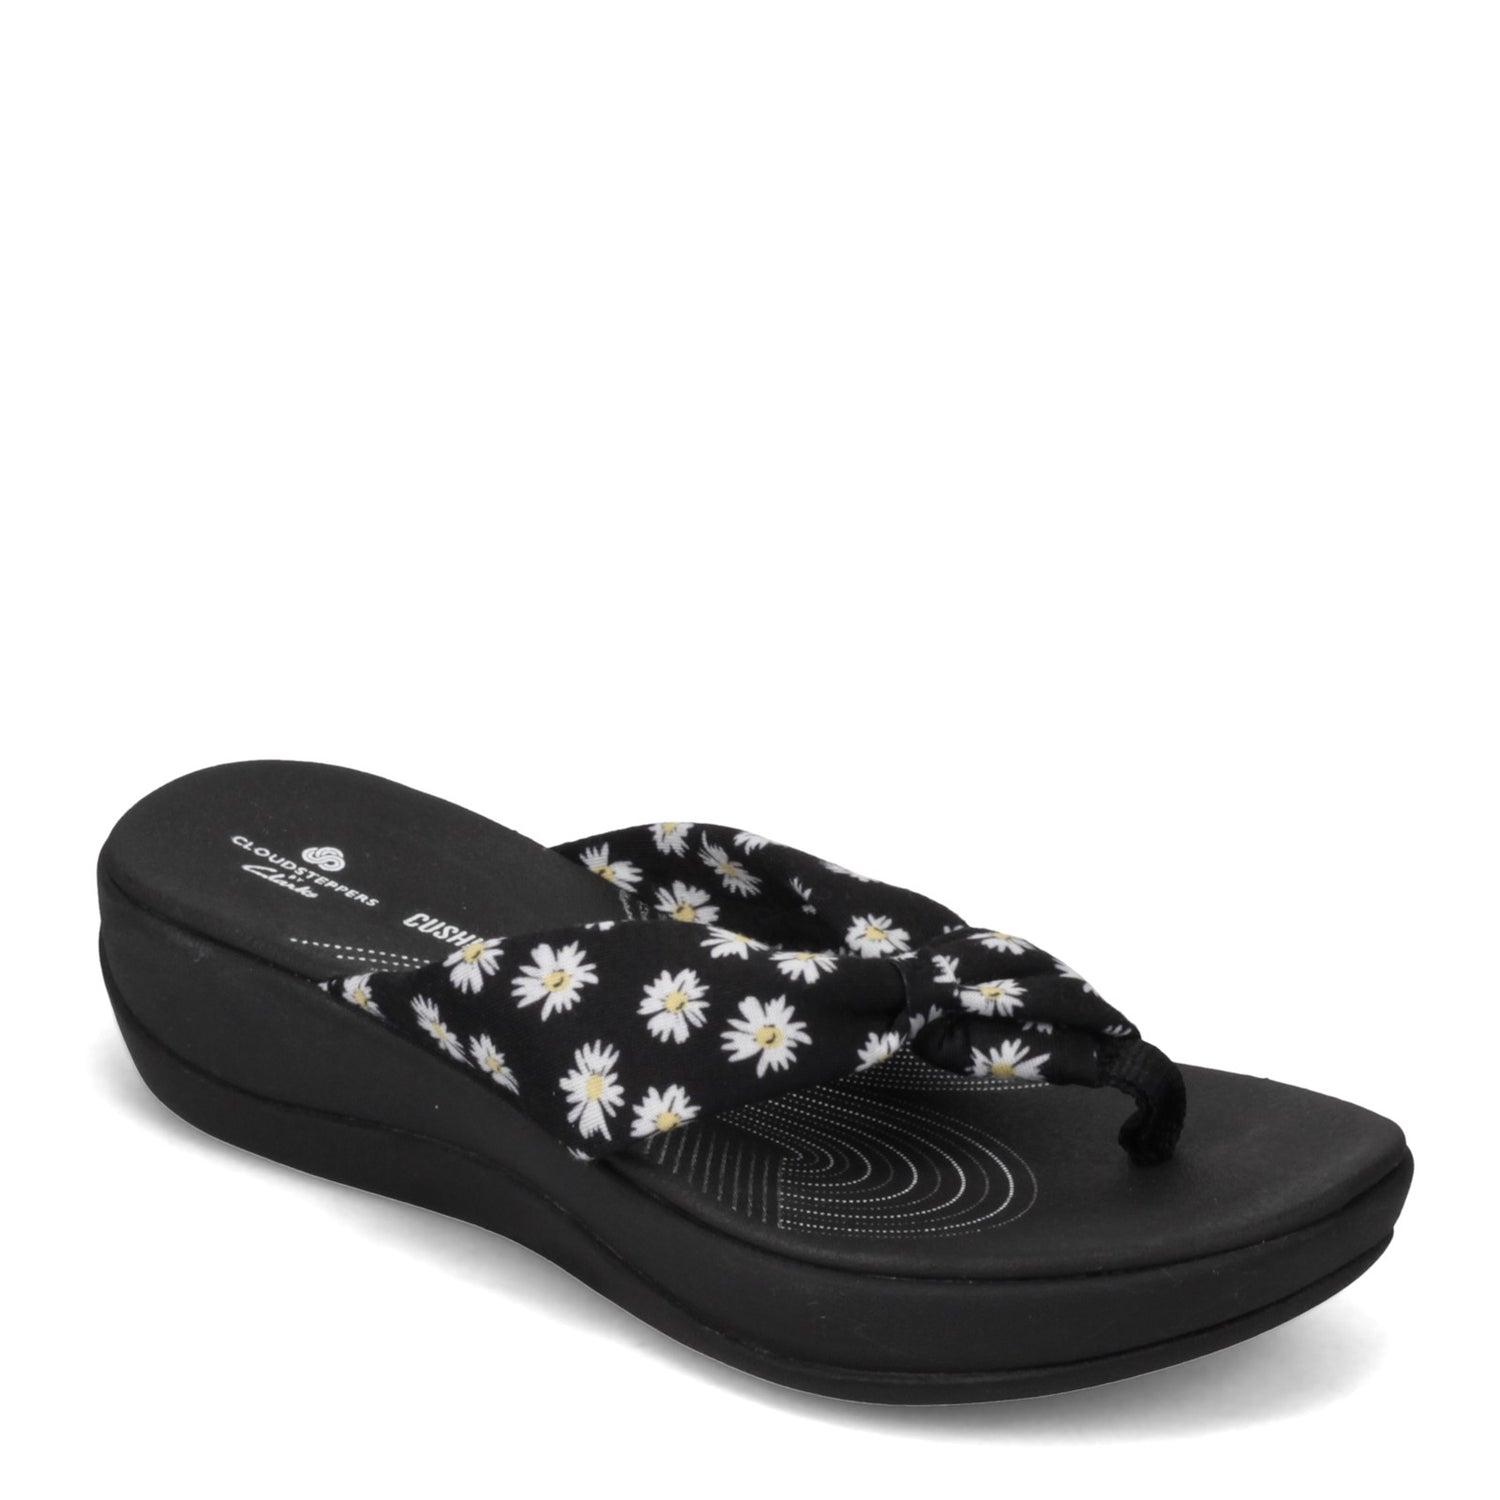 Peltz Shoes  Women's Clarks Arla Glison Sandal BLACK FLORAL PRINT 26156957